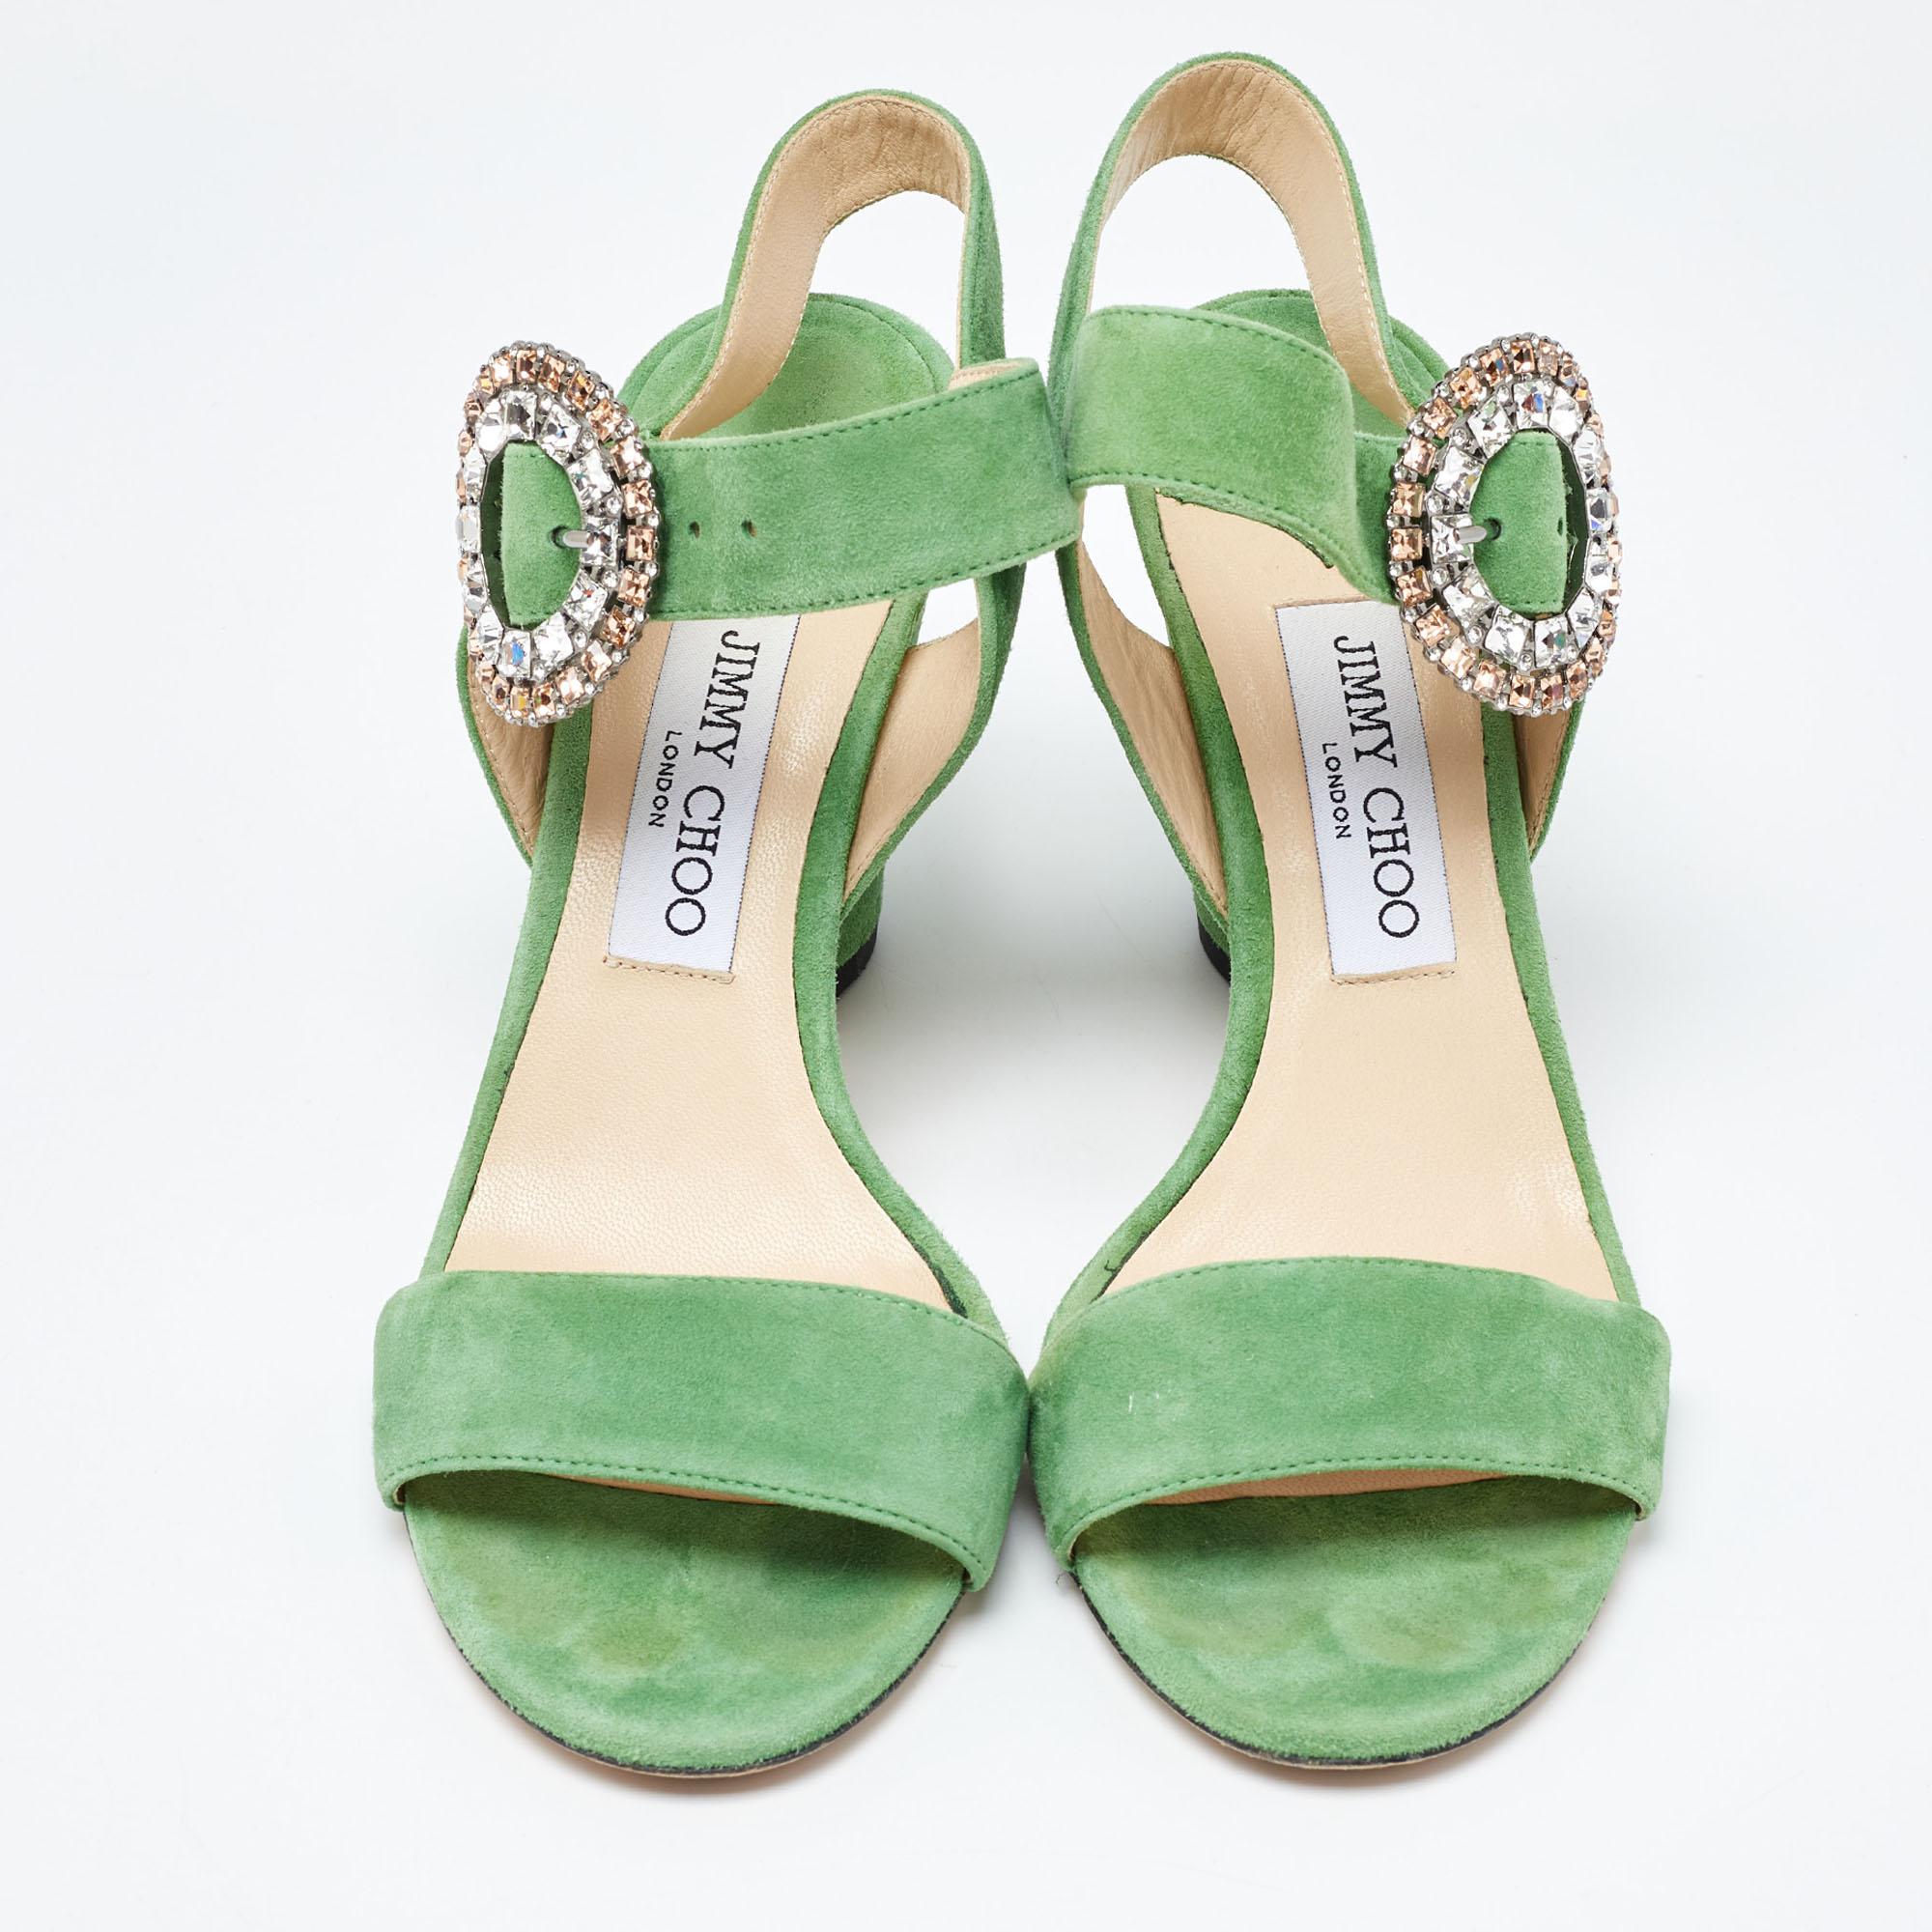 Découvrez l'élégance des chaussures avec ces sandales vertes pour femme de Jimmy Choo. Méticuleusement conçus, ces talons marient mode et confort, vous assurant de briller dans tous les contextes.

